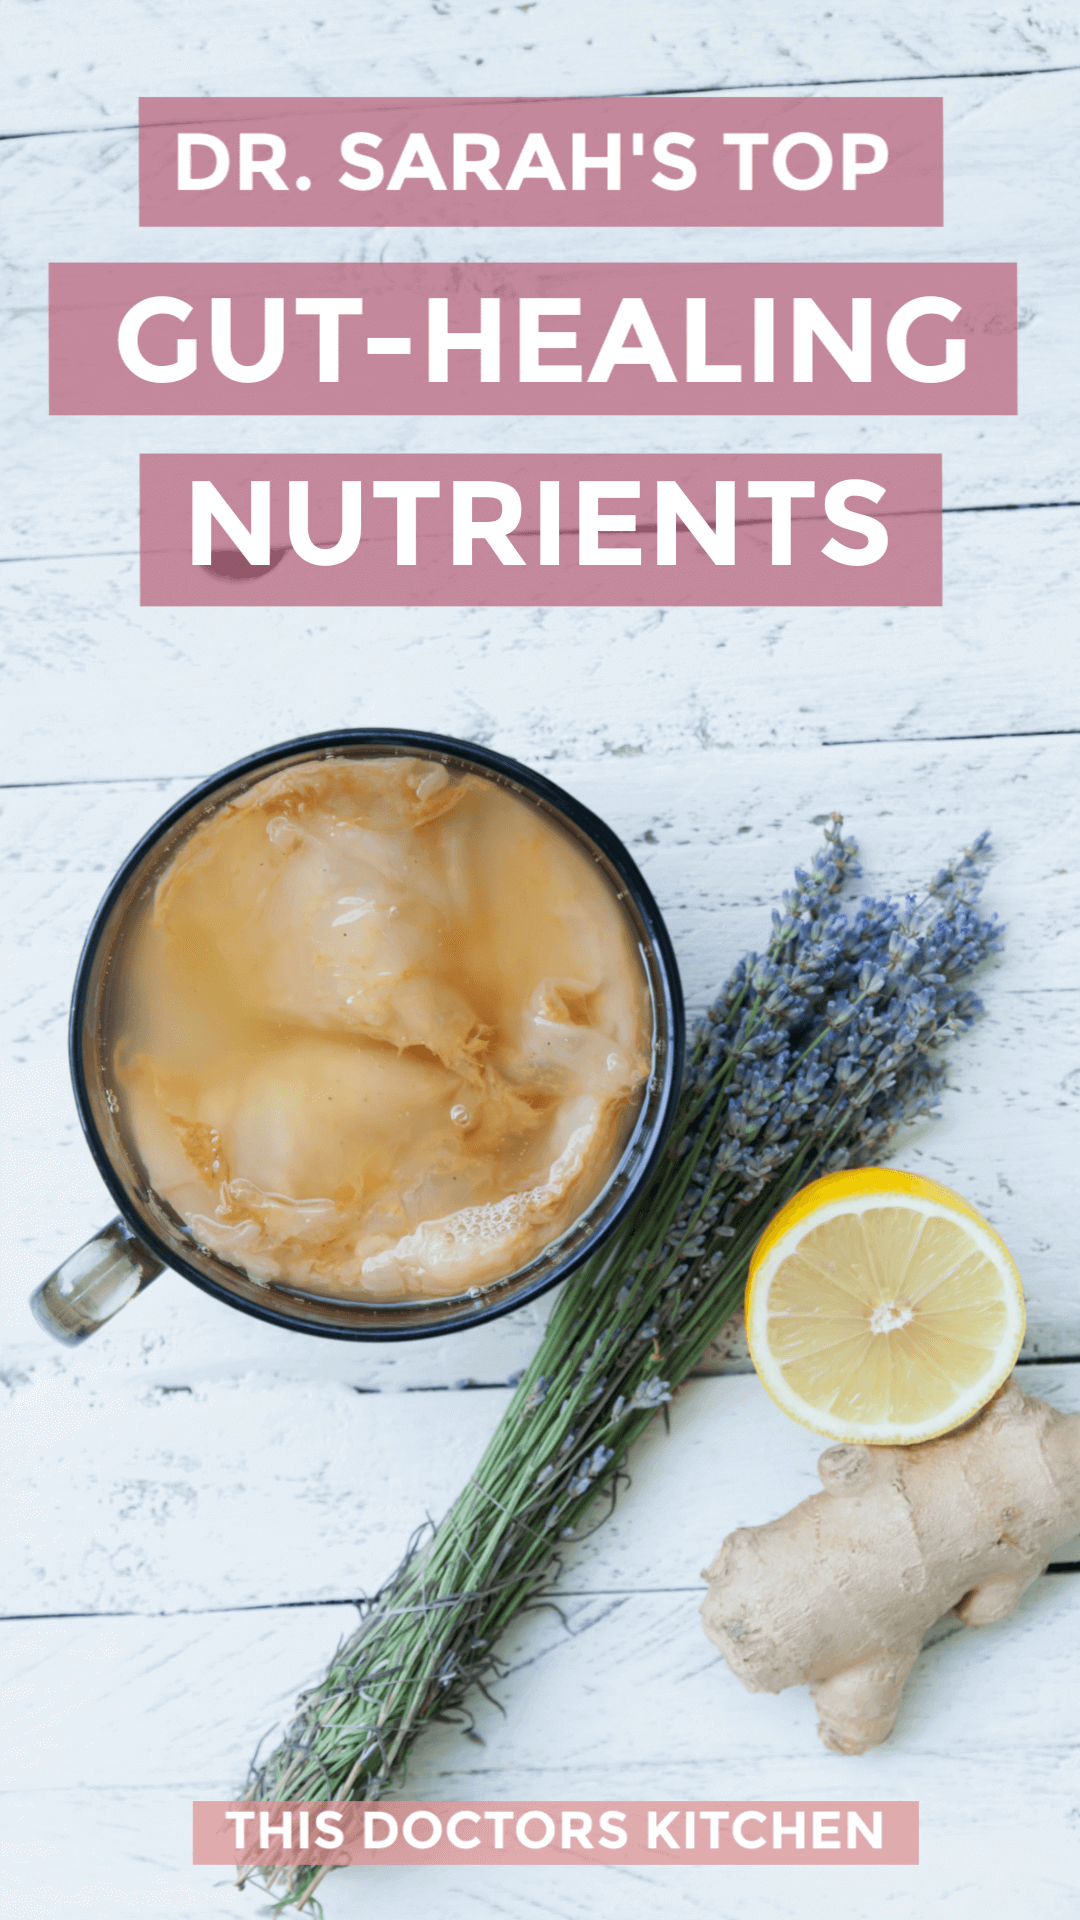 Top 8 Gut-Healing Nutrients & Supplements